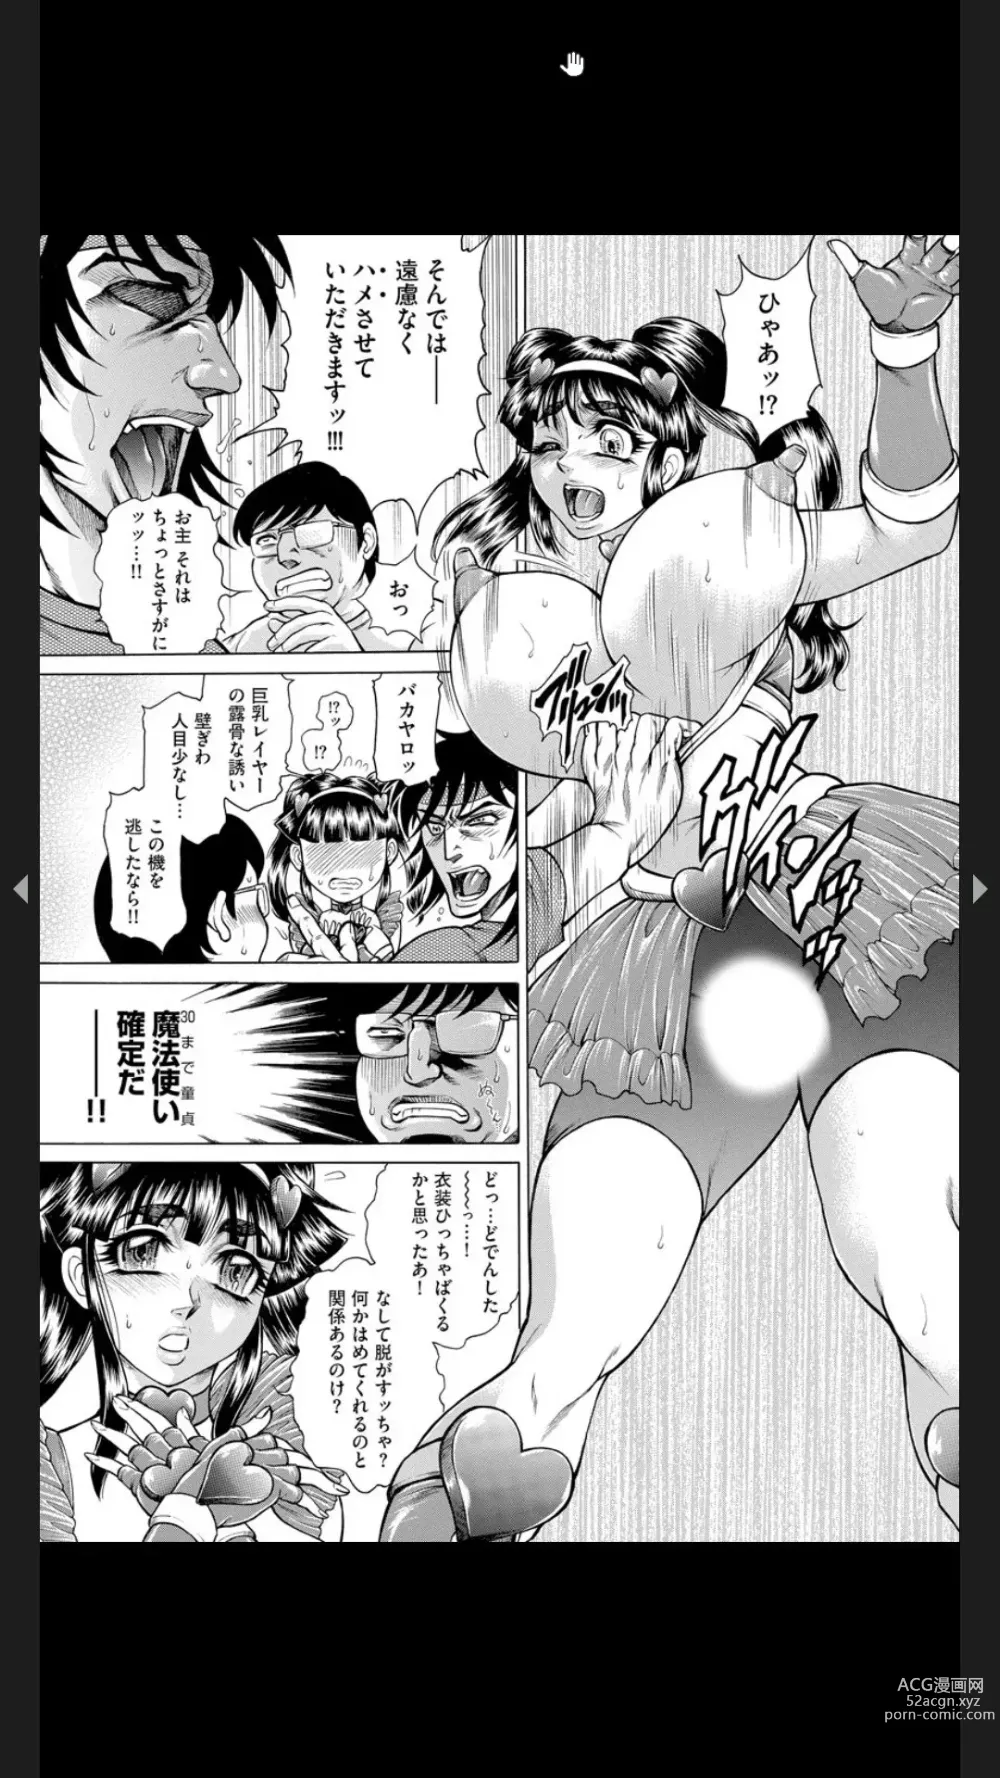 Page 190 of manga Injuku Meniku Mugobatsu